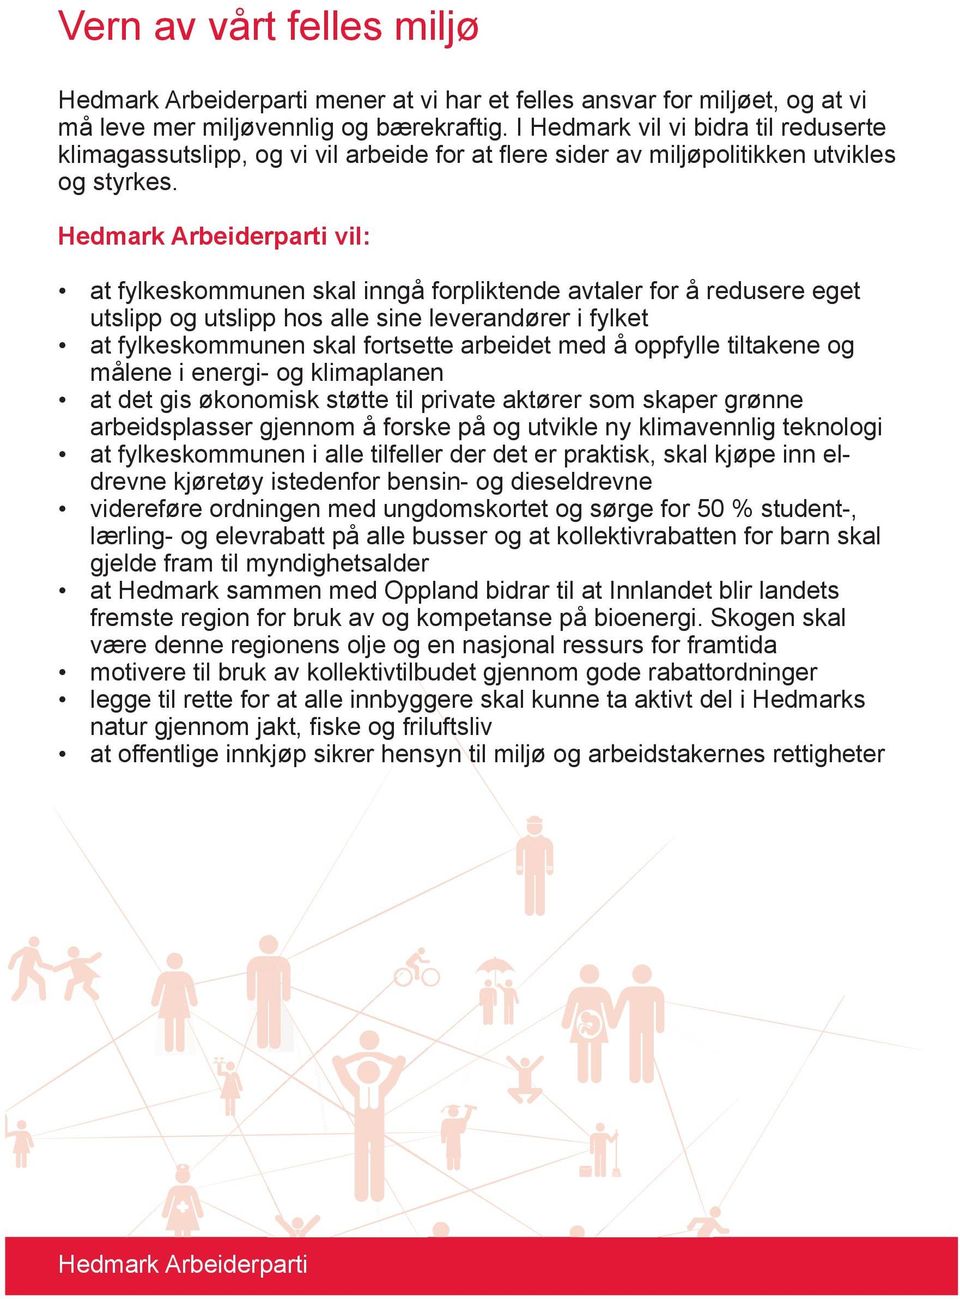 Hedmark Arbeiderparti vil: at fylkeskommunen skal inngå forpliktende avtaler for å redusere eget utslipp og utslipp hos alle sine leverandører i fylket at fylkeskommunen skal fortsette arbeidet med å